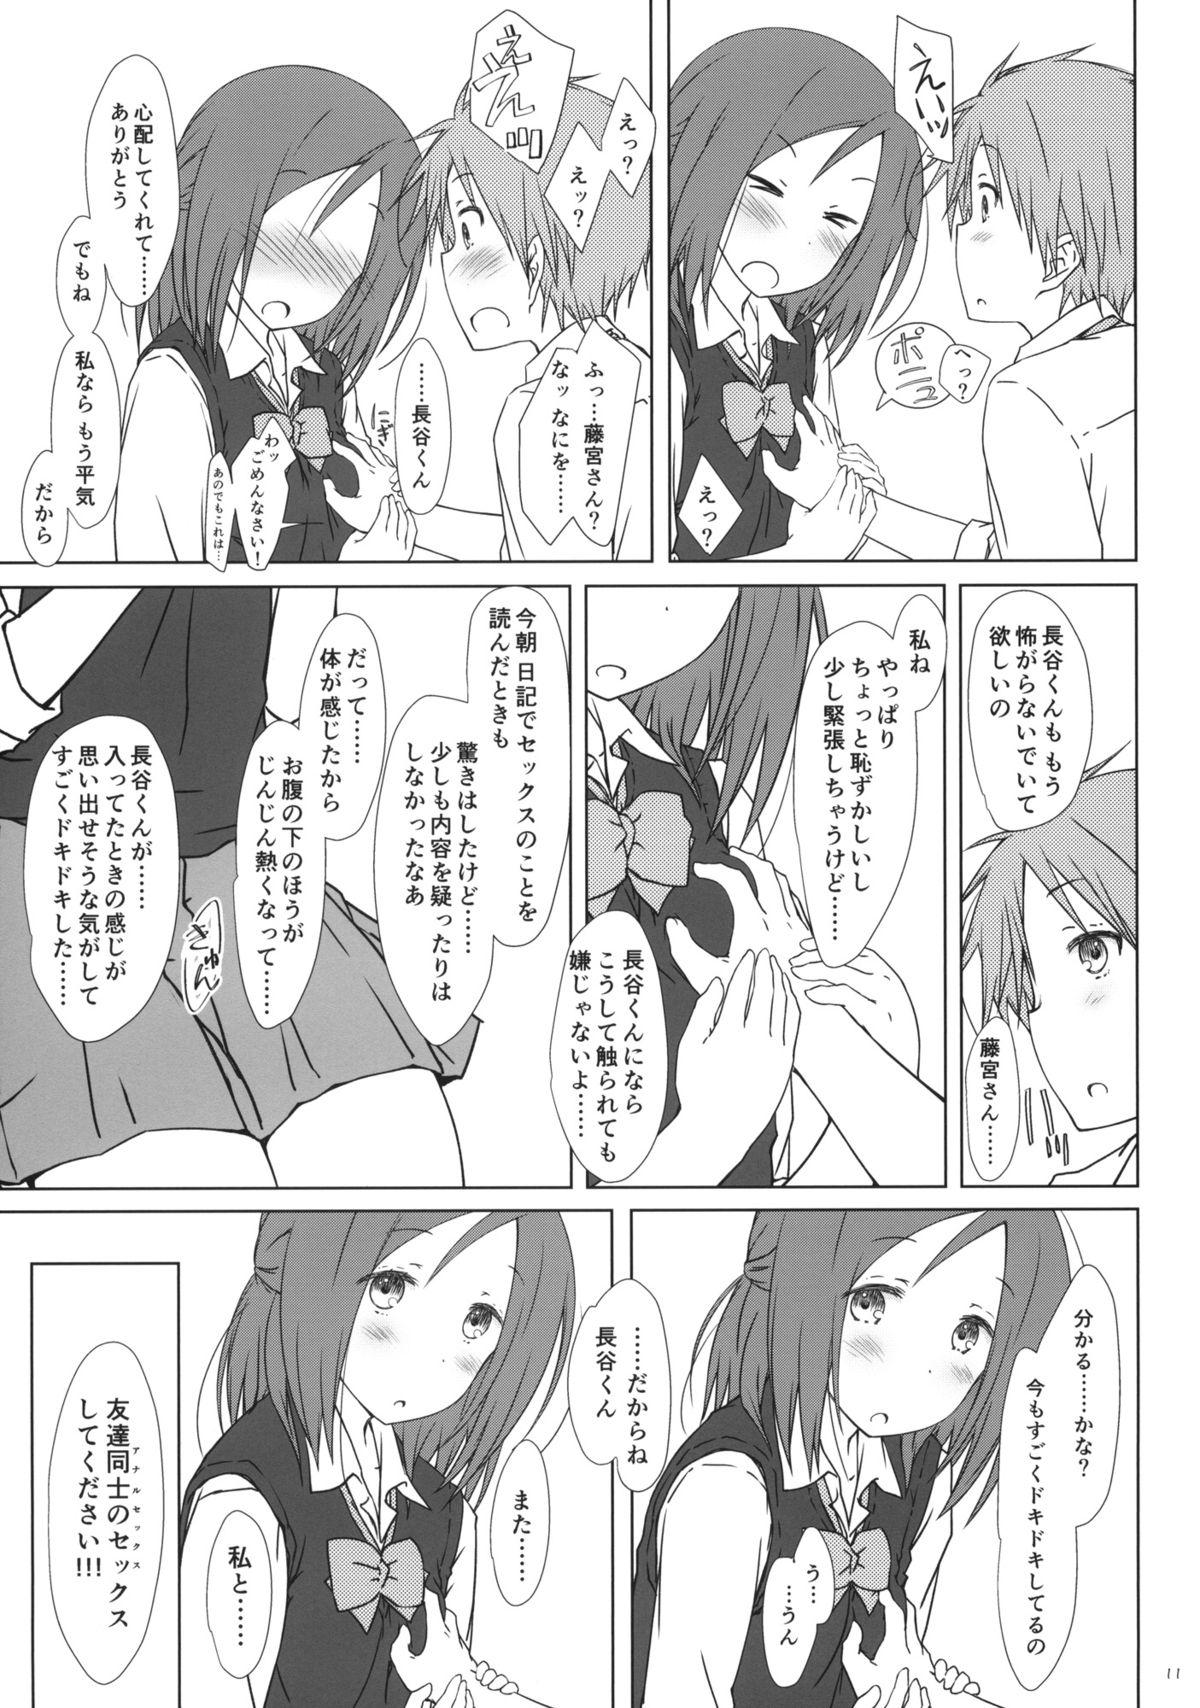 Anal Play "Tomodachi to no Sex no Tsuzuki no sorekara." + Paper - One week friends Ruiva - Page 10